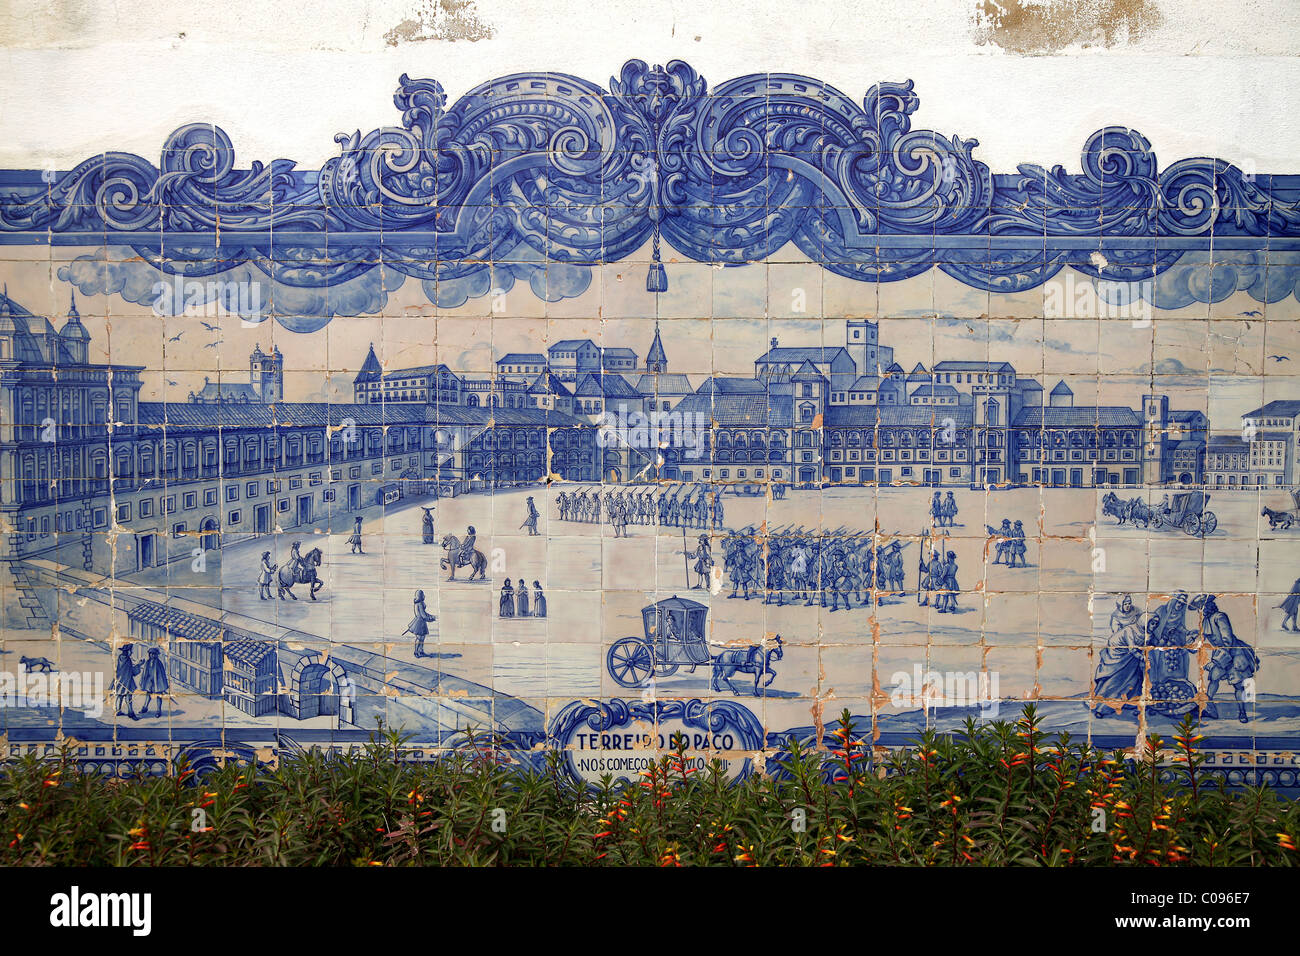 Lissabon vor dem Erdbeben von 1755, Wandgemälde in der Kirche Santa Luzia in der typischen Azulejos blau glasierte Fliesen in Lissabon Stockfoto